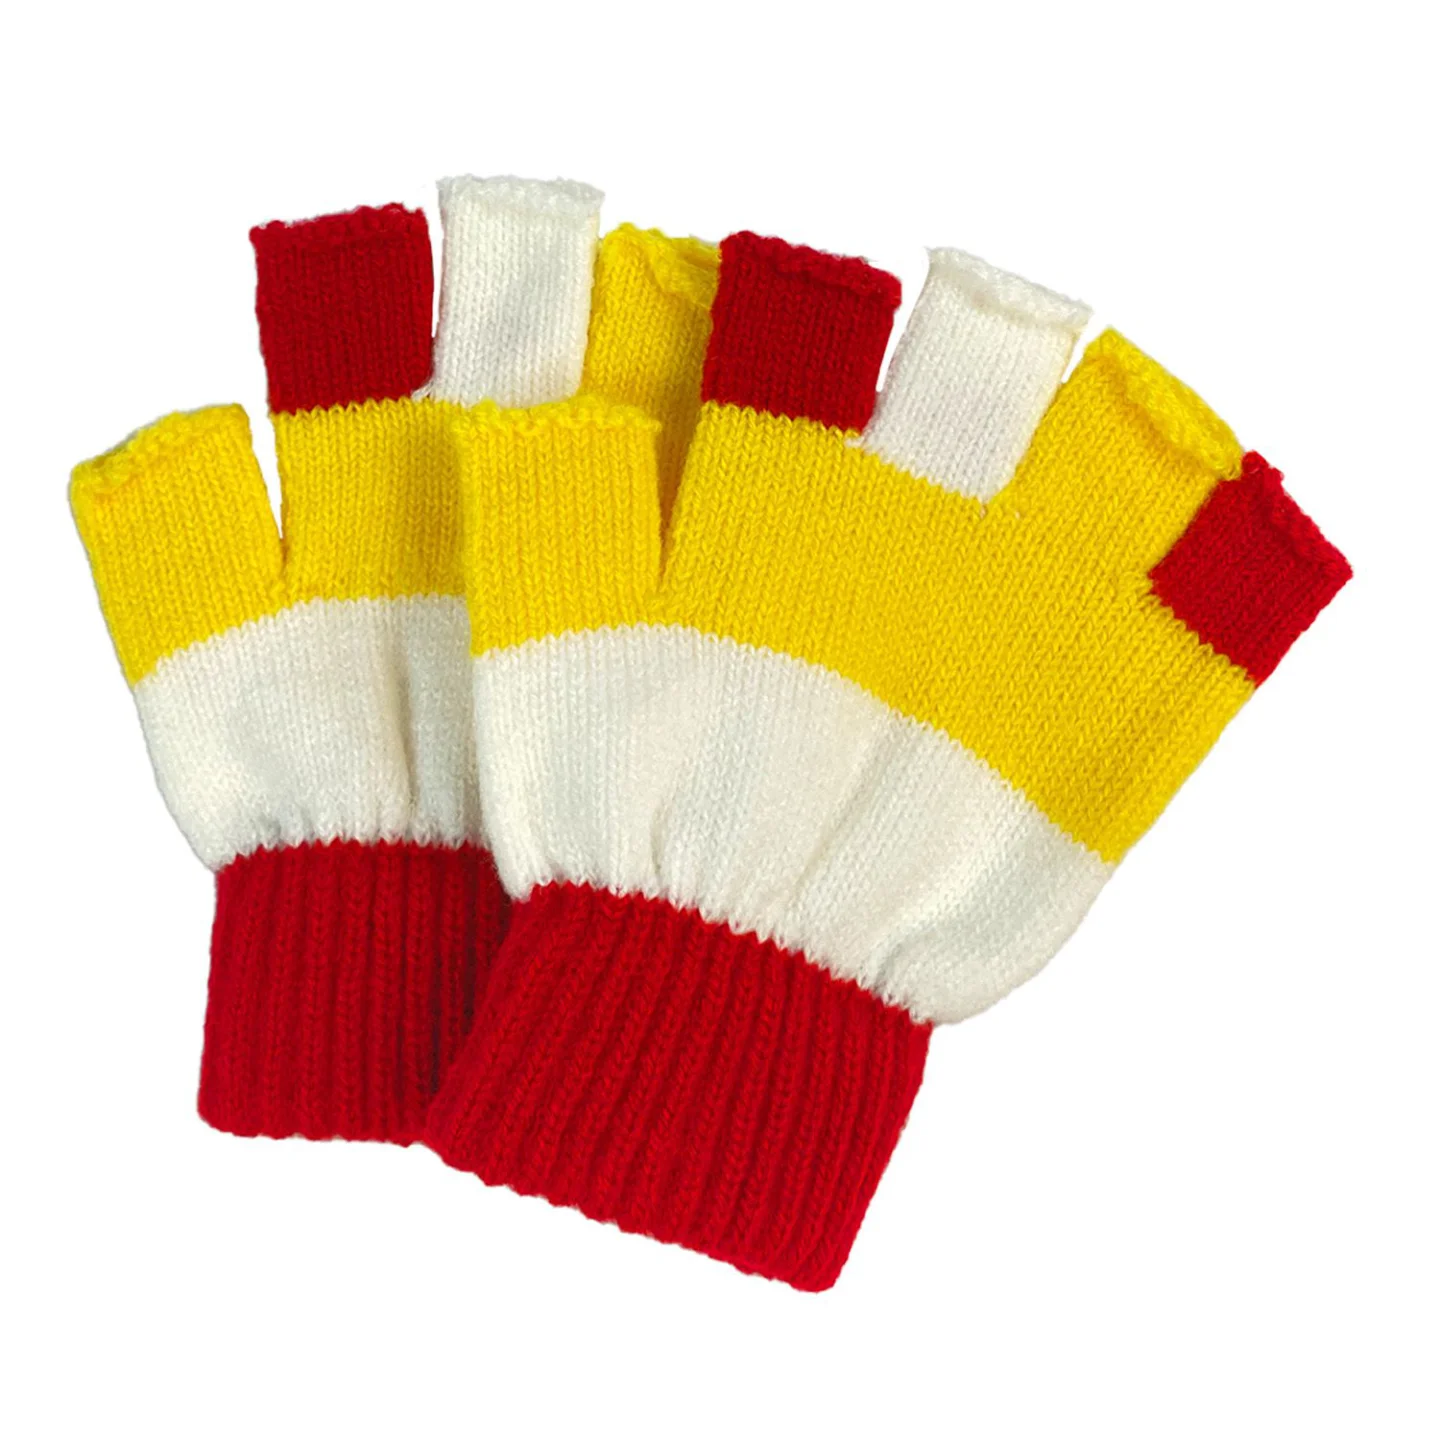 Goedkope Oeteldonk handschoenen kinderen.